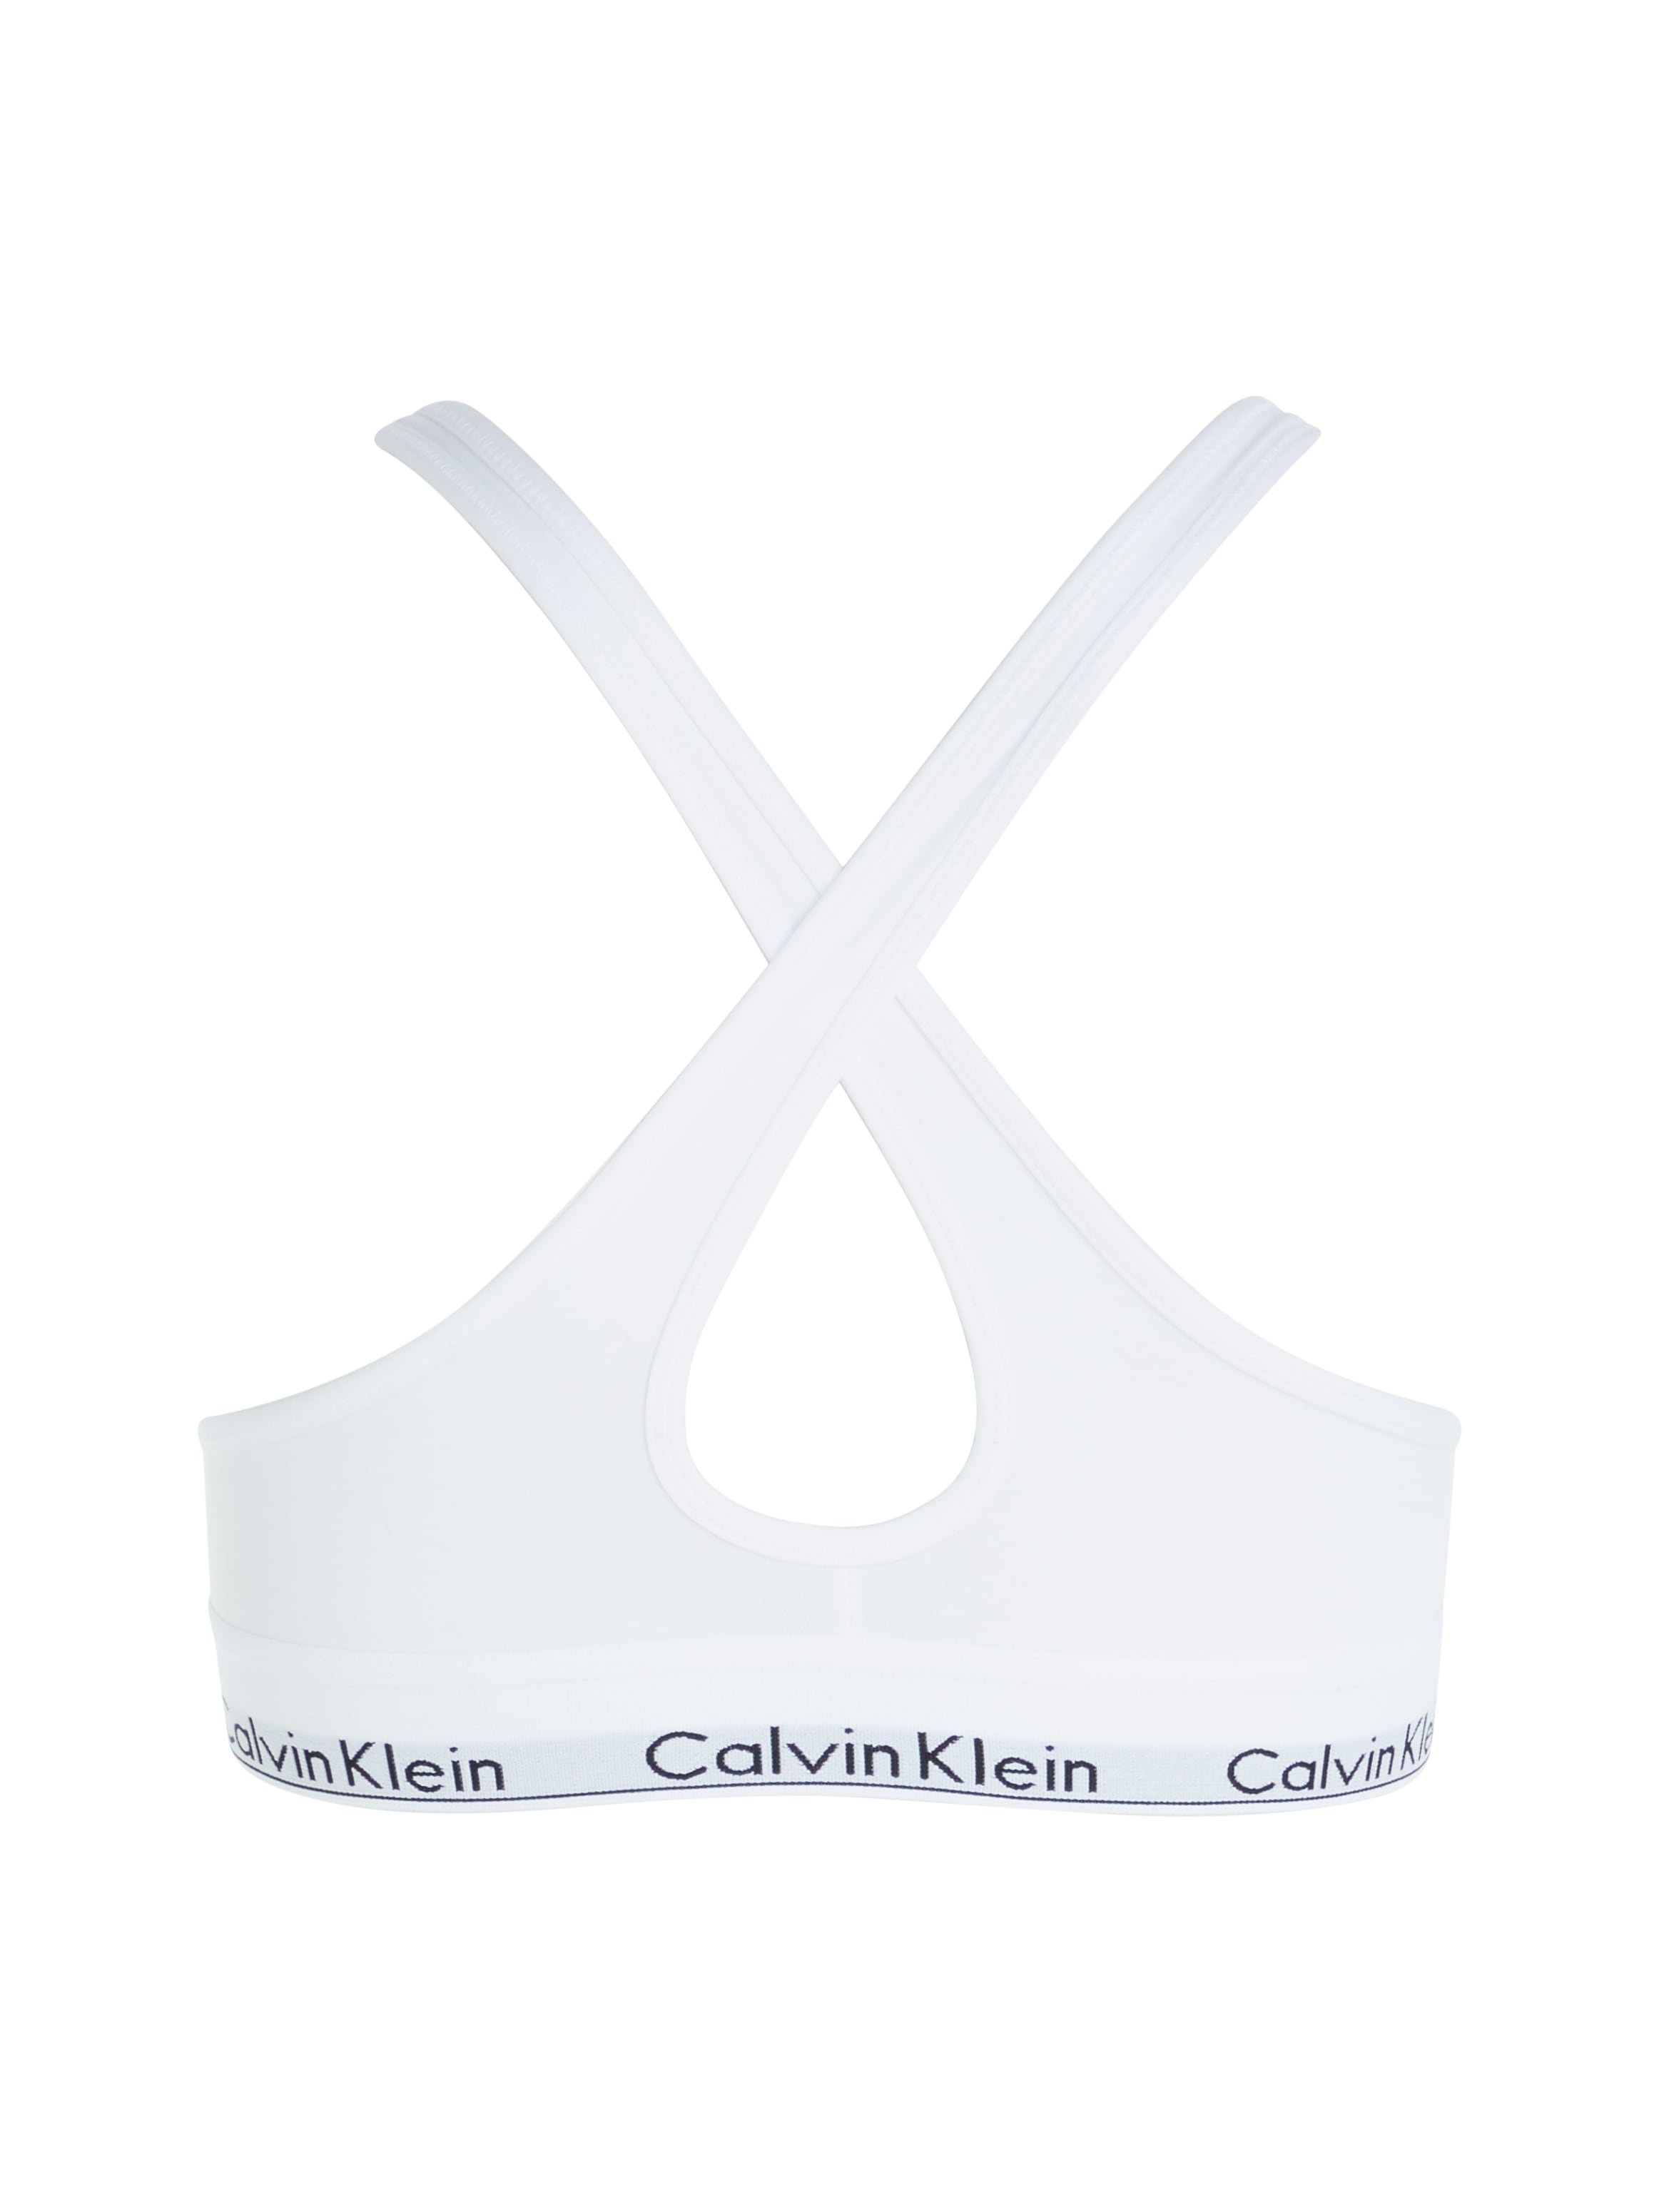 CALVIN KLEIN UNDERWEAR Bralette - Modern Cotton